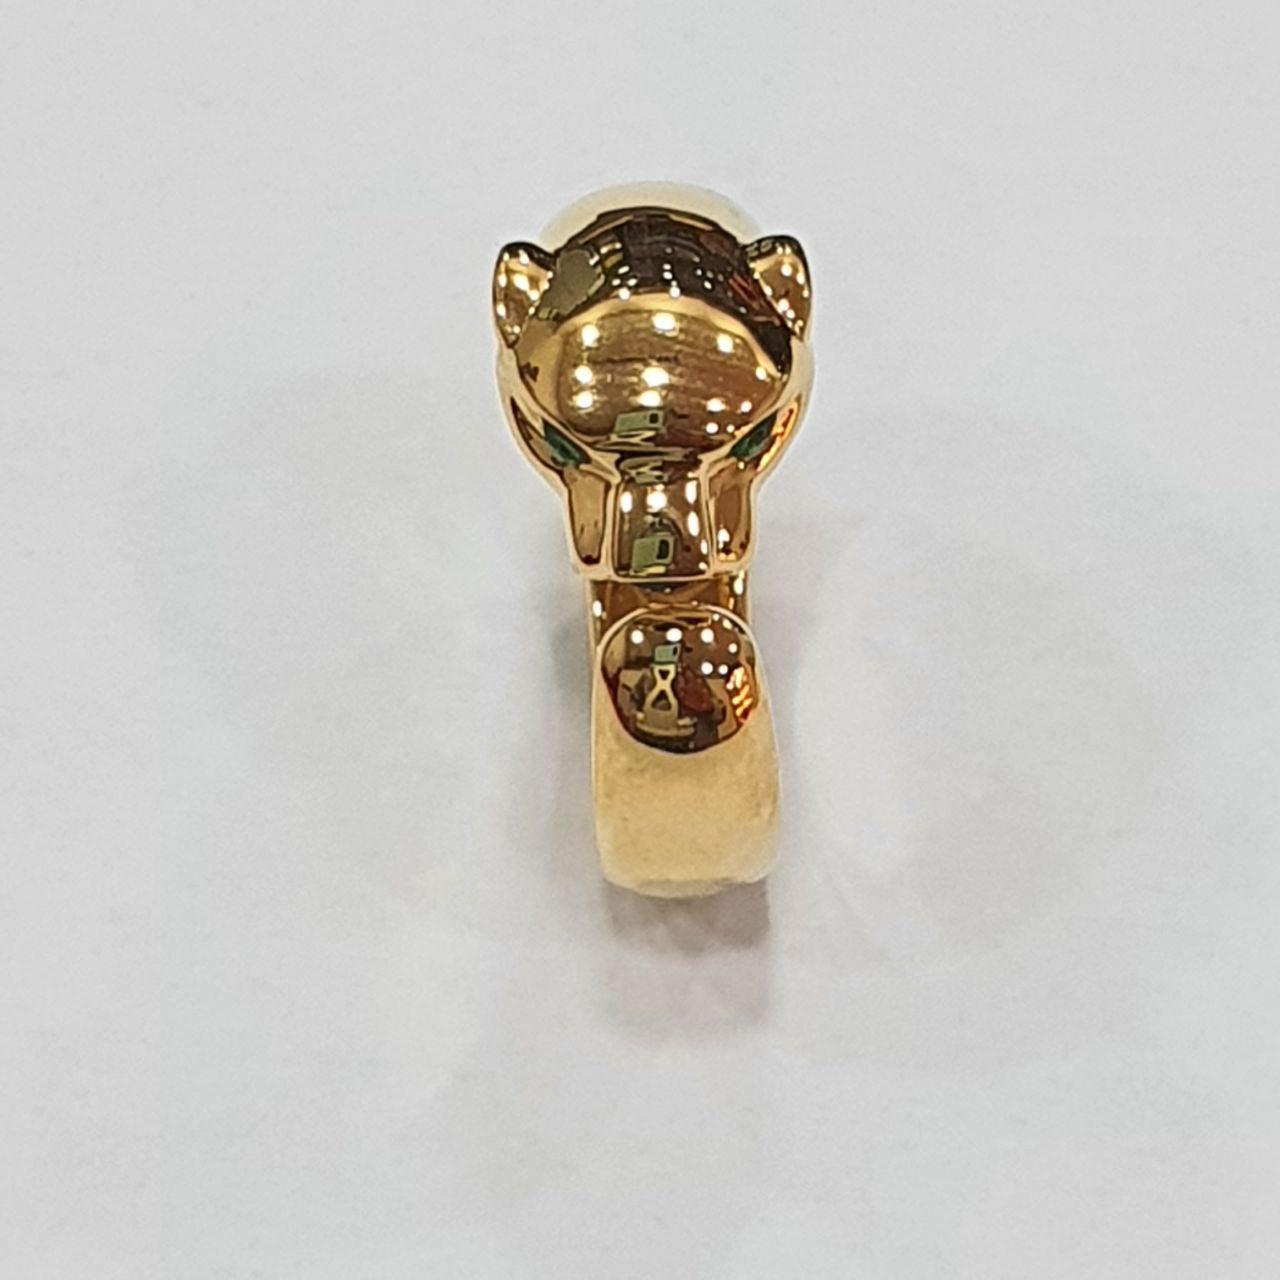 22K / 916 Gold Leopard Ring V2-916 gold-Best Gold Shop